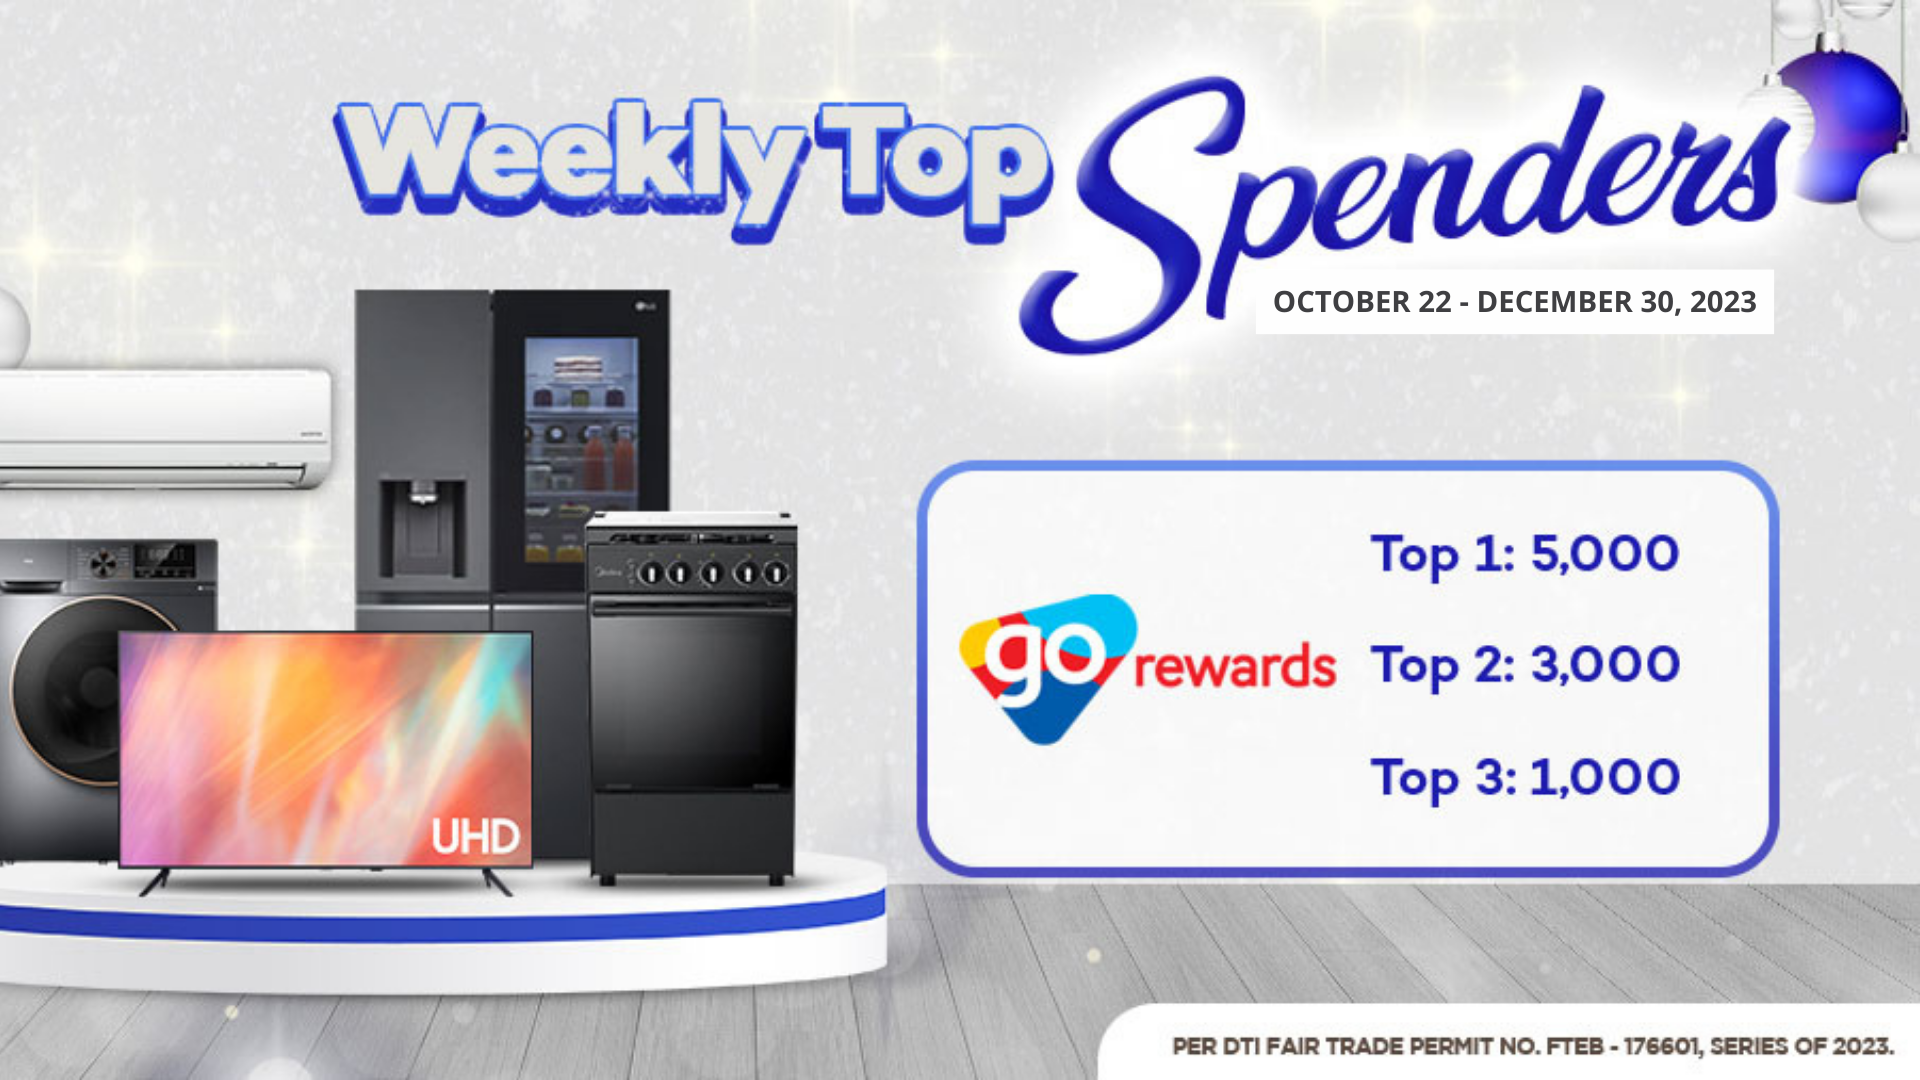 Weekly Top Spenders Rewards